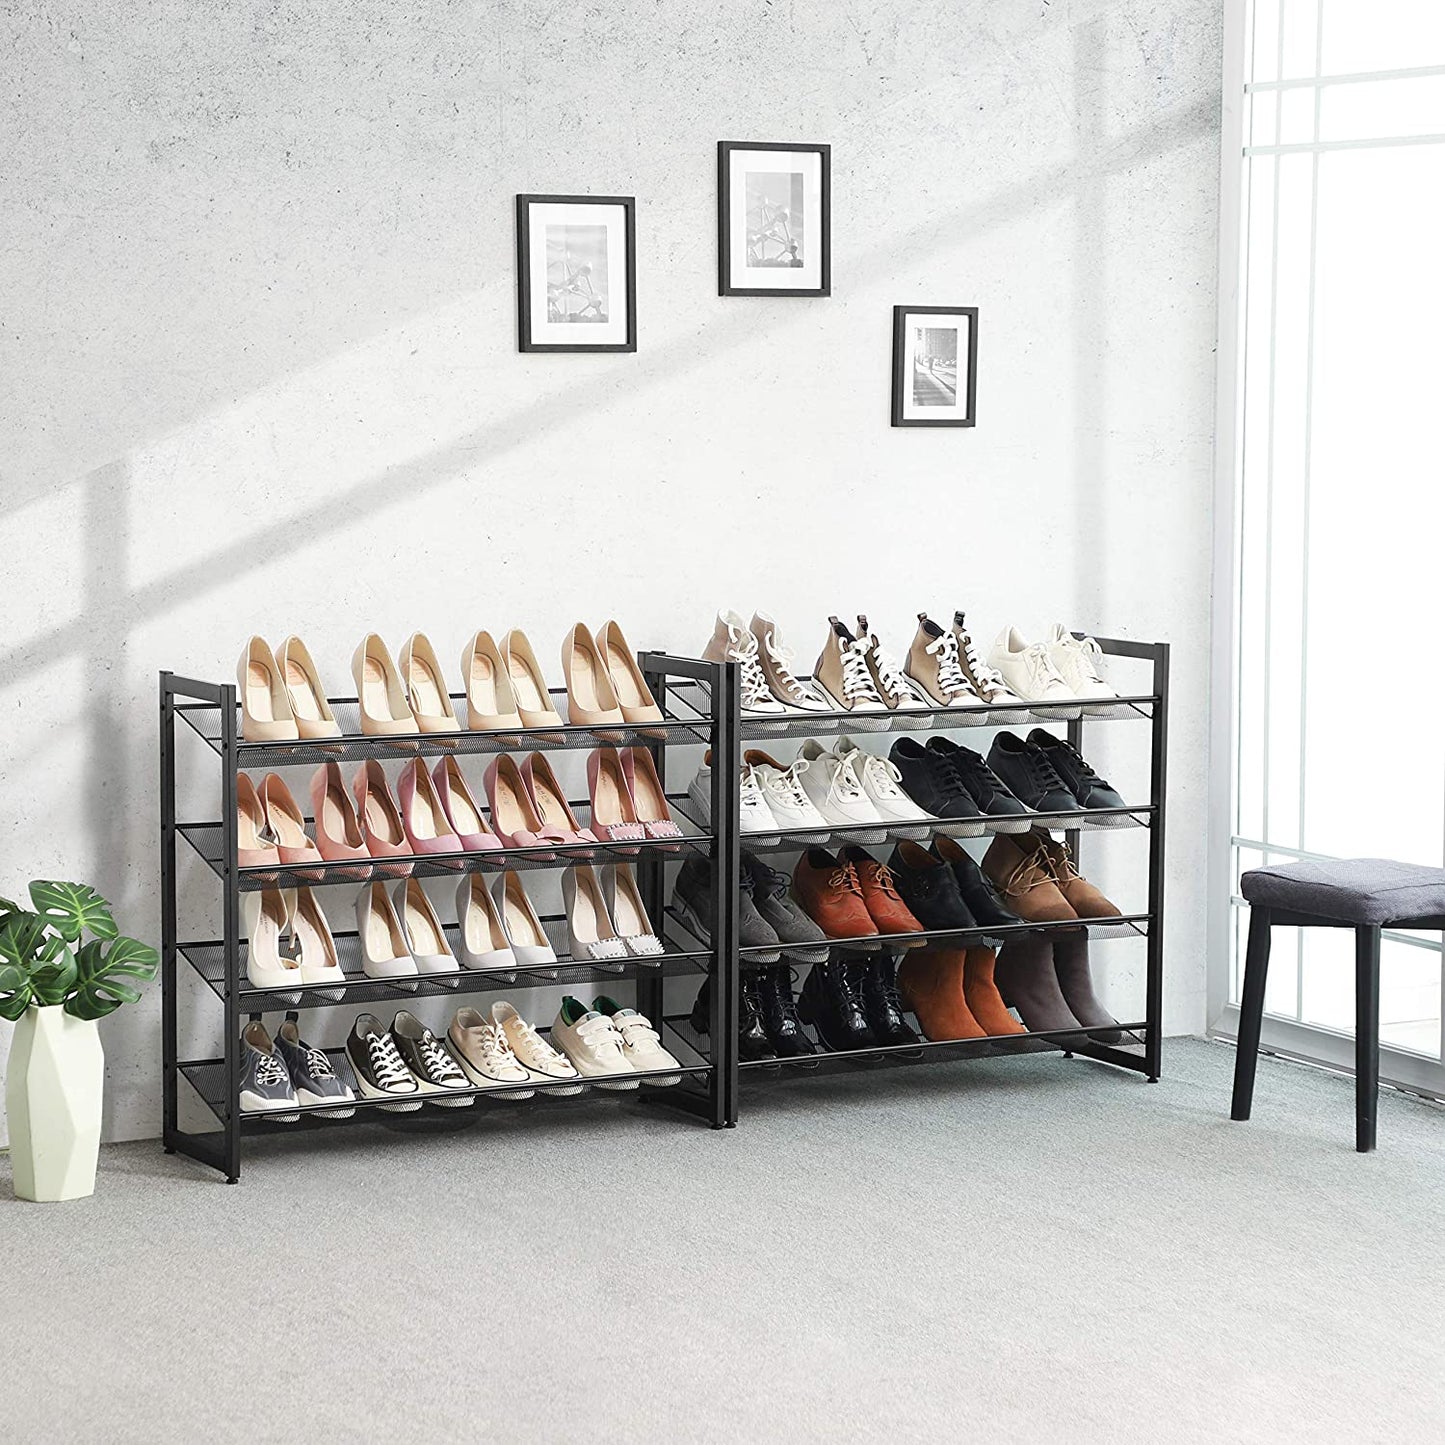 Étagère à chaussures Nancy's 8 niveaux - Armoire à chaussures - Étagère de rangement pour chaussures 40 paires